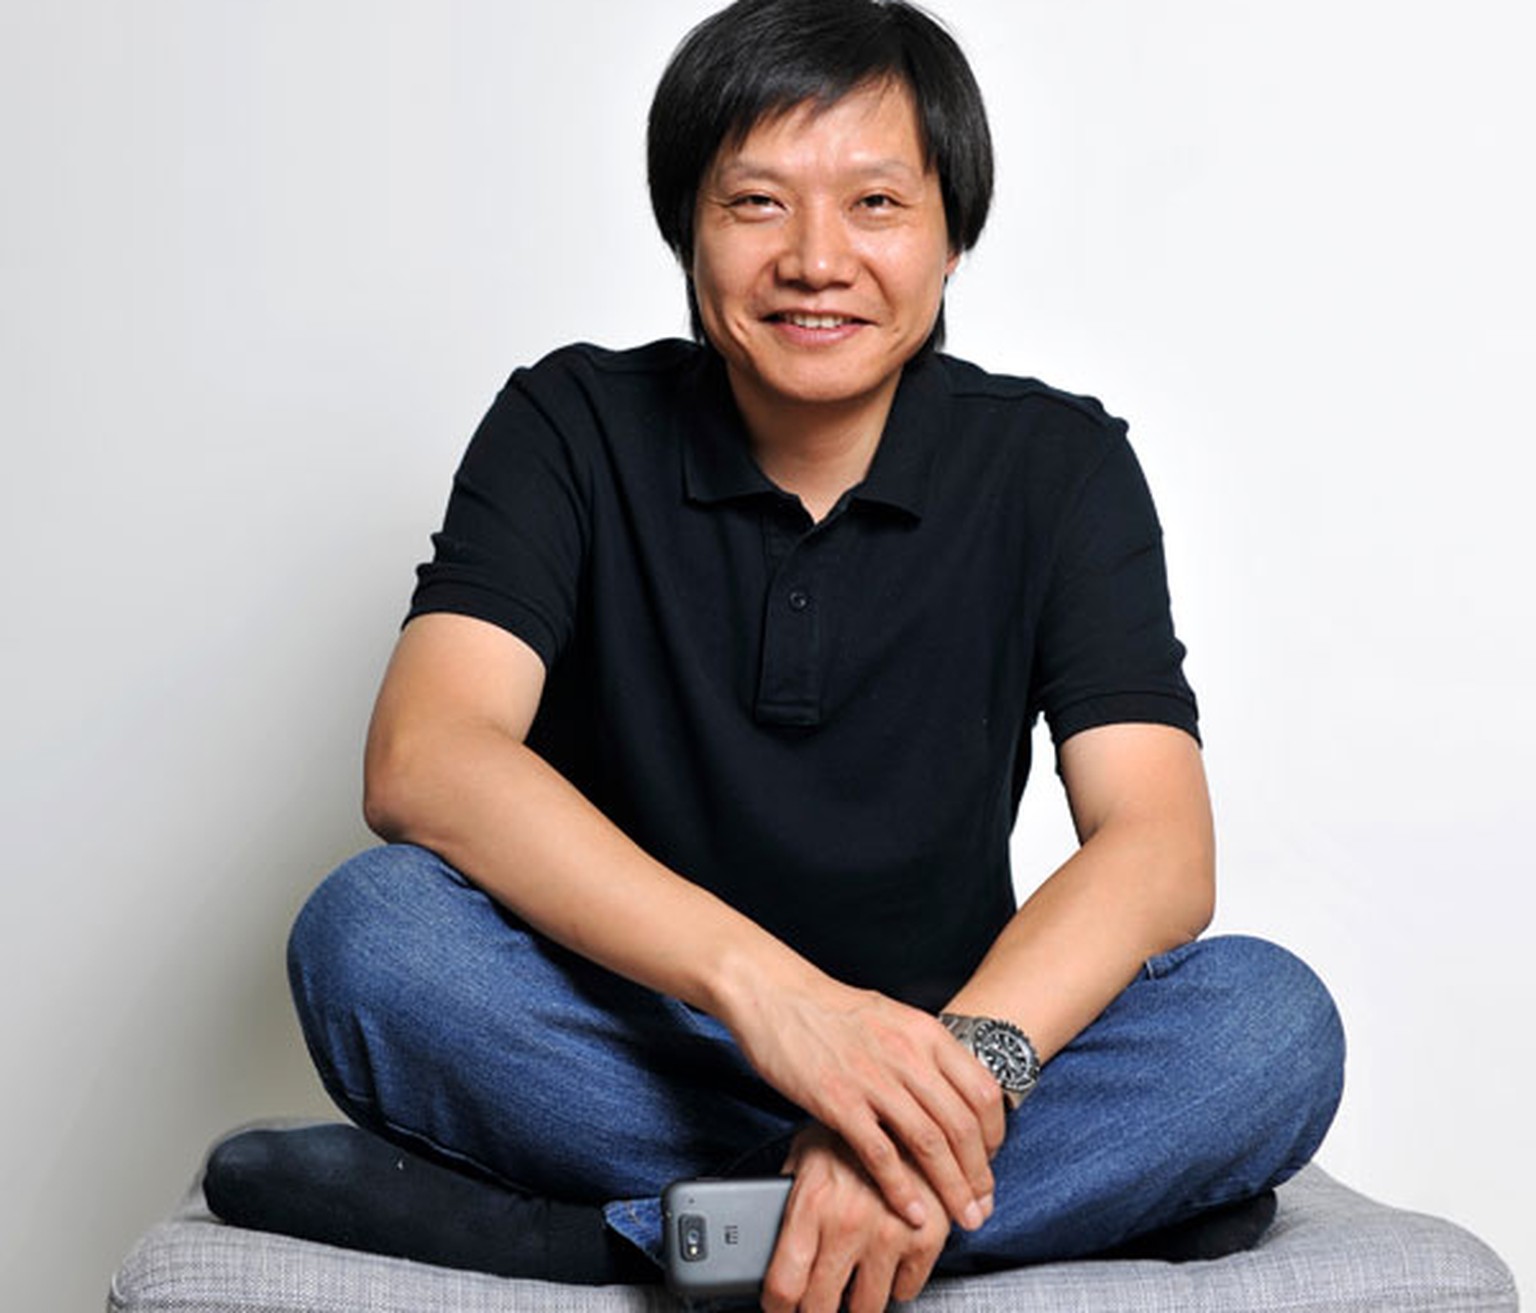 Geek und Entrepreneur: Xiaomi-Mitgründer Lei Jun rangiert auf Platz 23 der reichsten Chinesen.